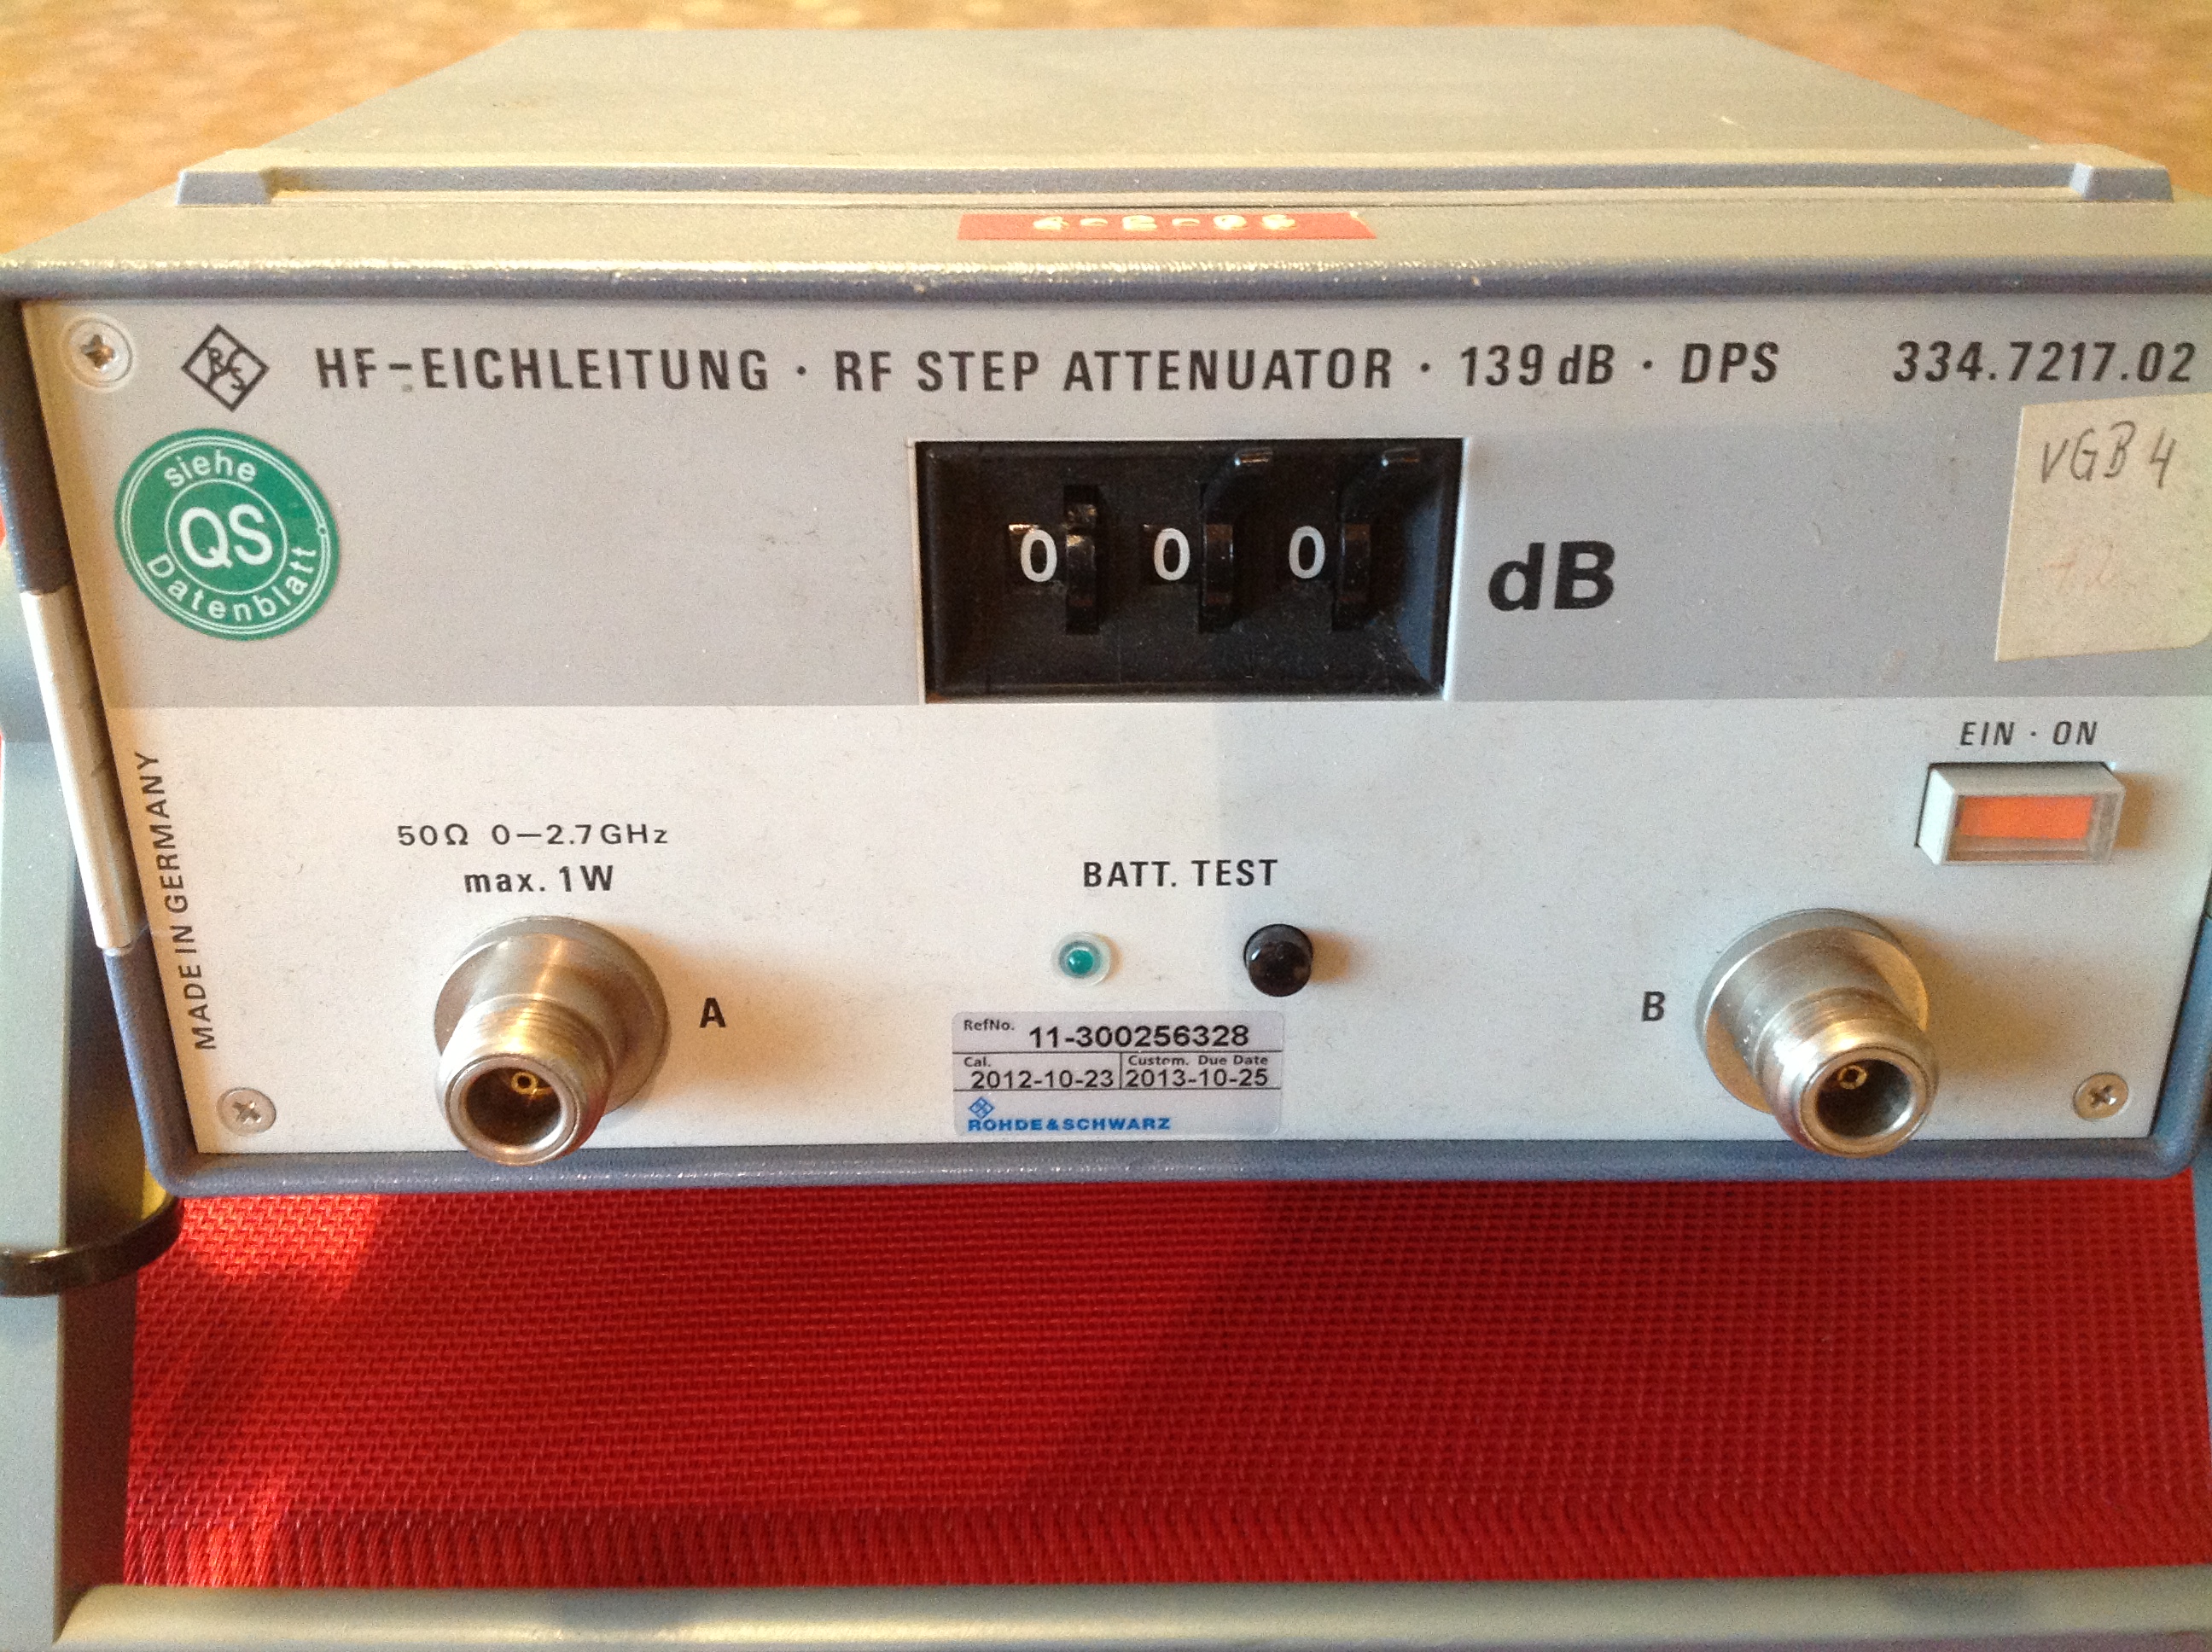 Rohde & Schwarz HF-Eichleitung / RF Step Attenuator / Hochfrequenz-Kalibriergerät 139 dB DPS